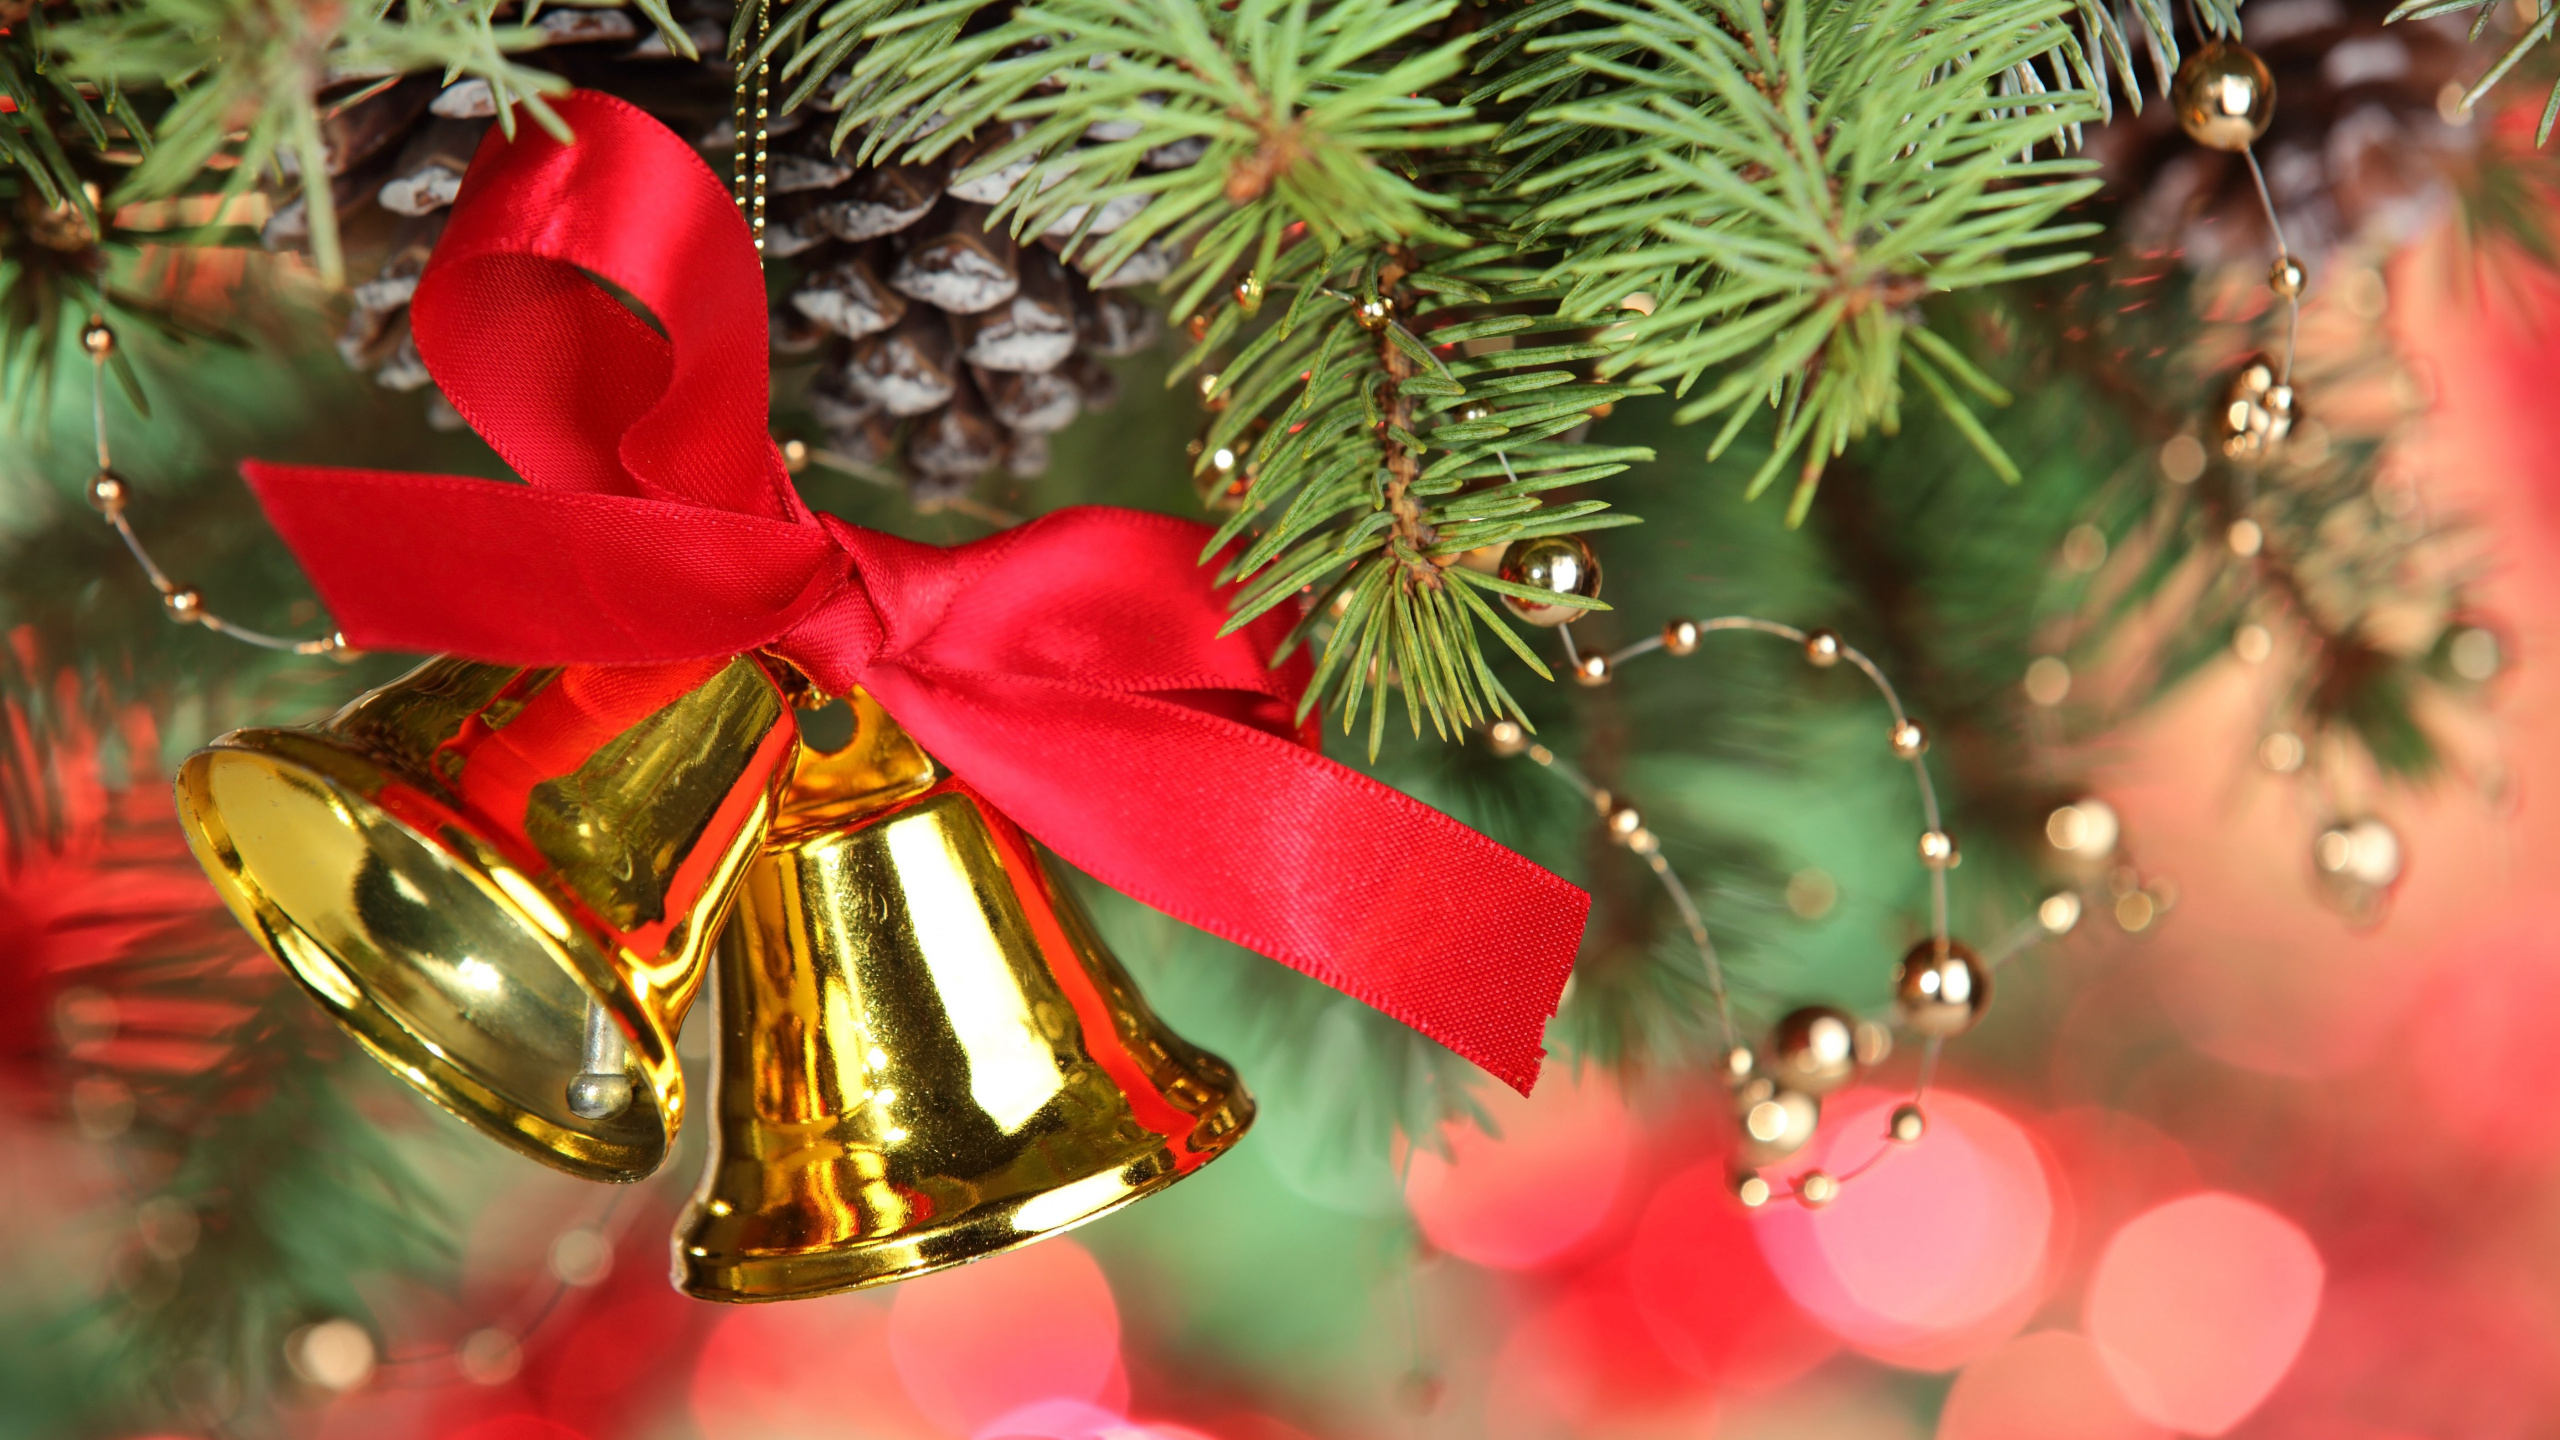 Weihnachtsdekoration, Weihnachten, Jingle Bell, Weihnachtsbaum, Christmas Ornament. Wallpaper in 2560x1440 Resolution